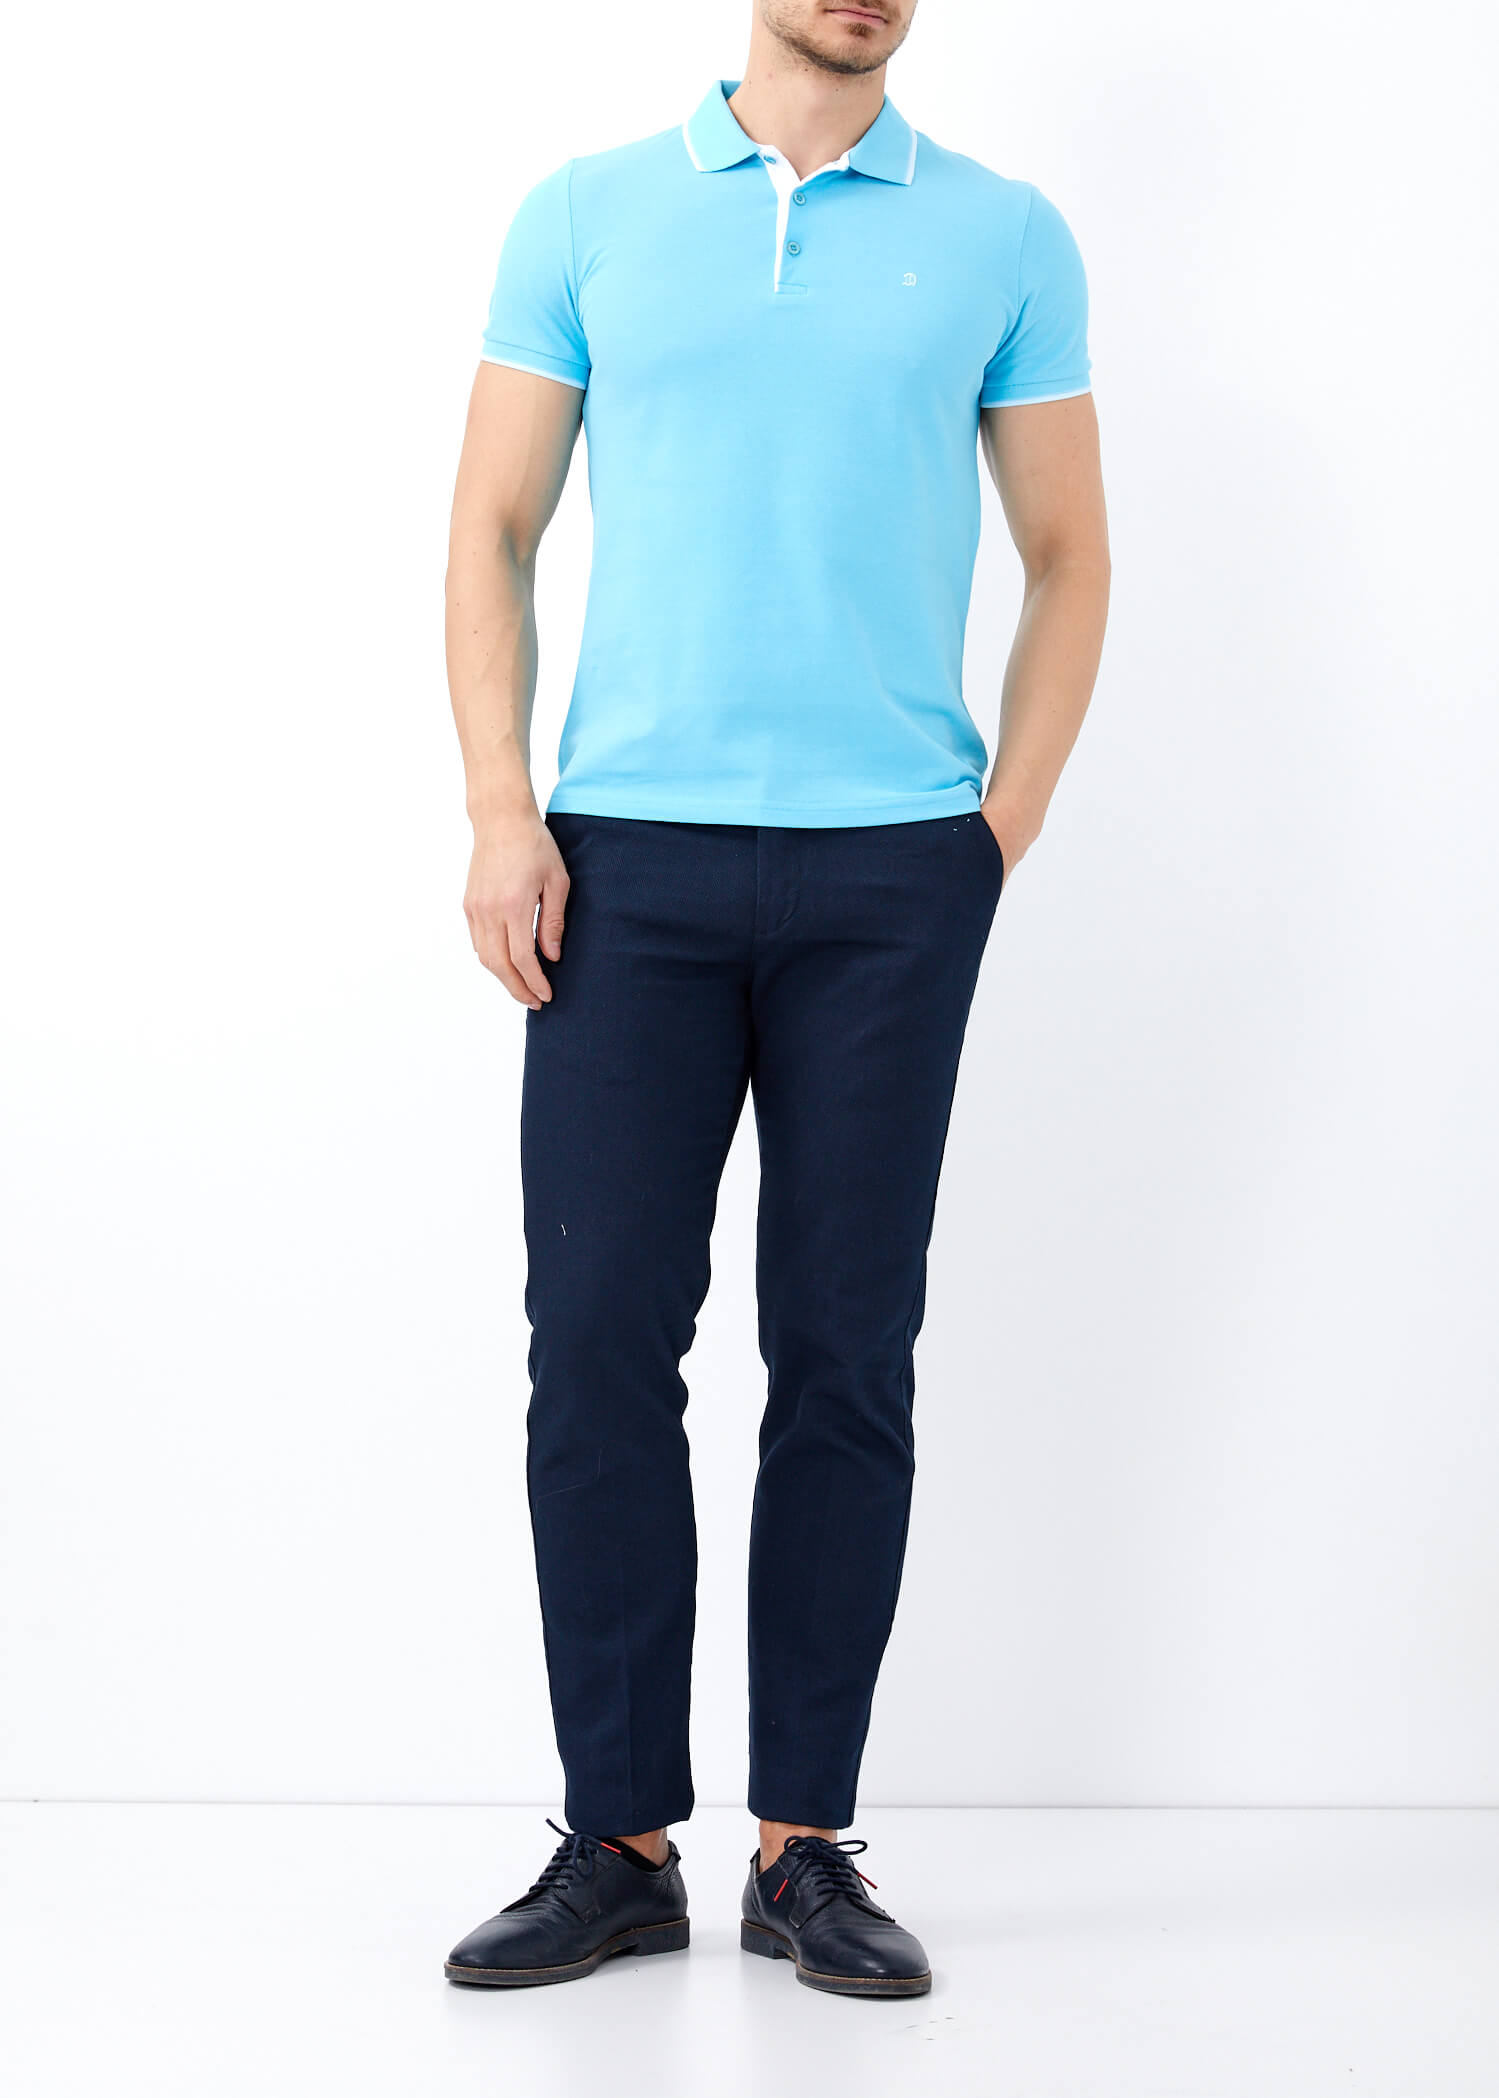 aqua blue polo shirt